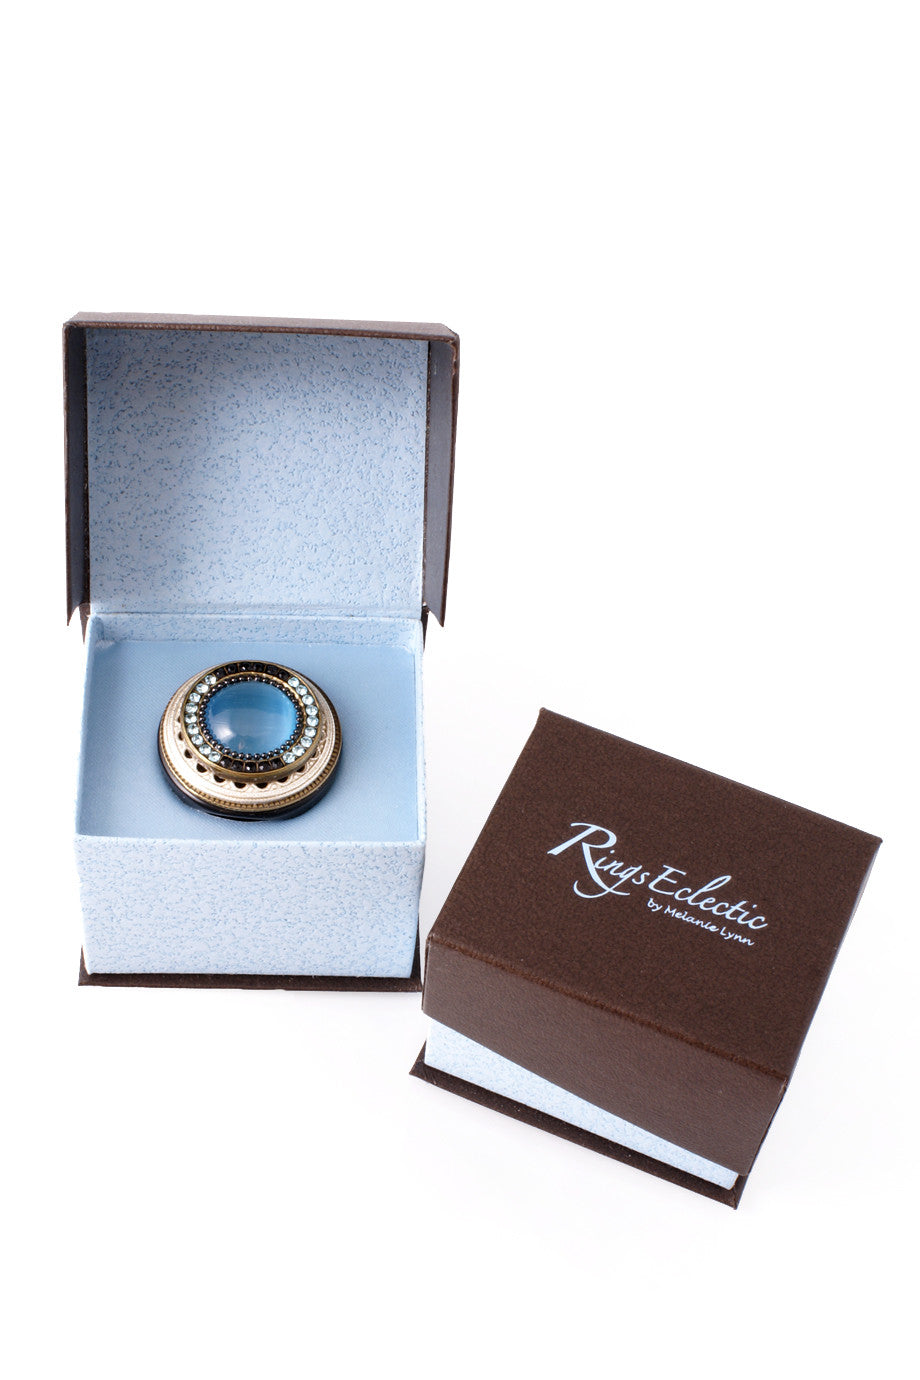 Μπλε Δακτυλίδι με Κρύσταλλα - Ringseclectic | Κοσμήματα